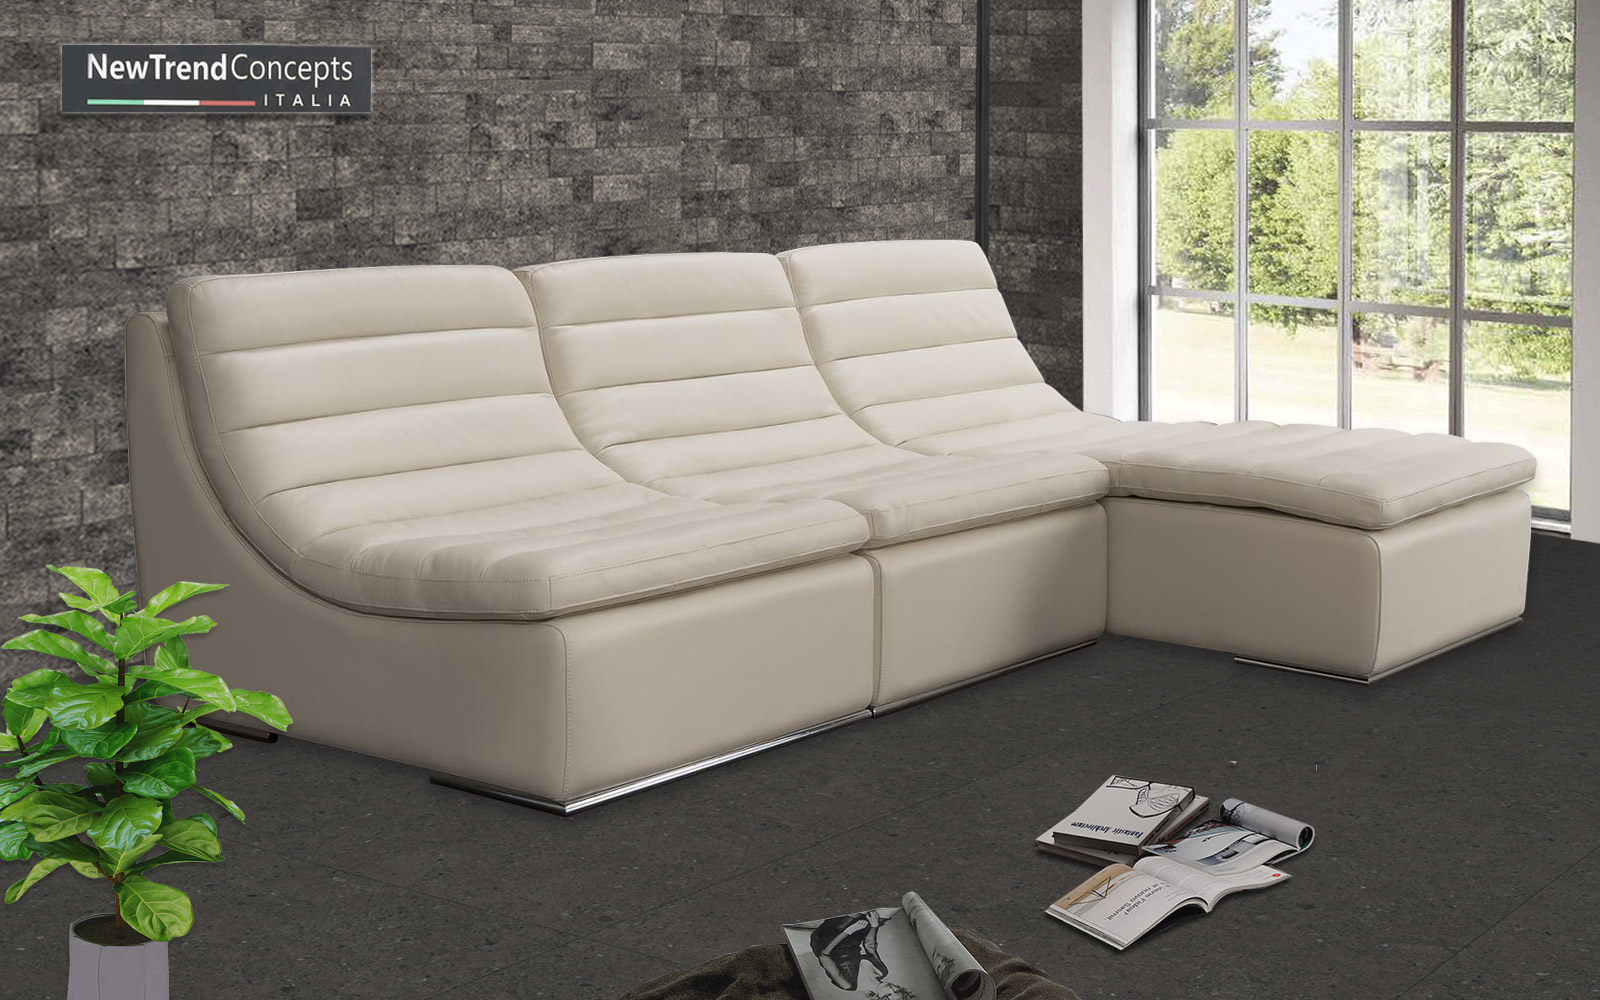 10+ mẫu sofa da nhập khẩu tại Hải Phòng đẹp xuất sắc - Ảnh 12